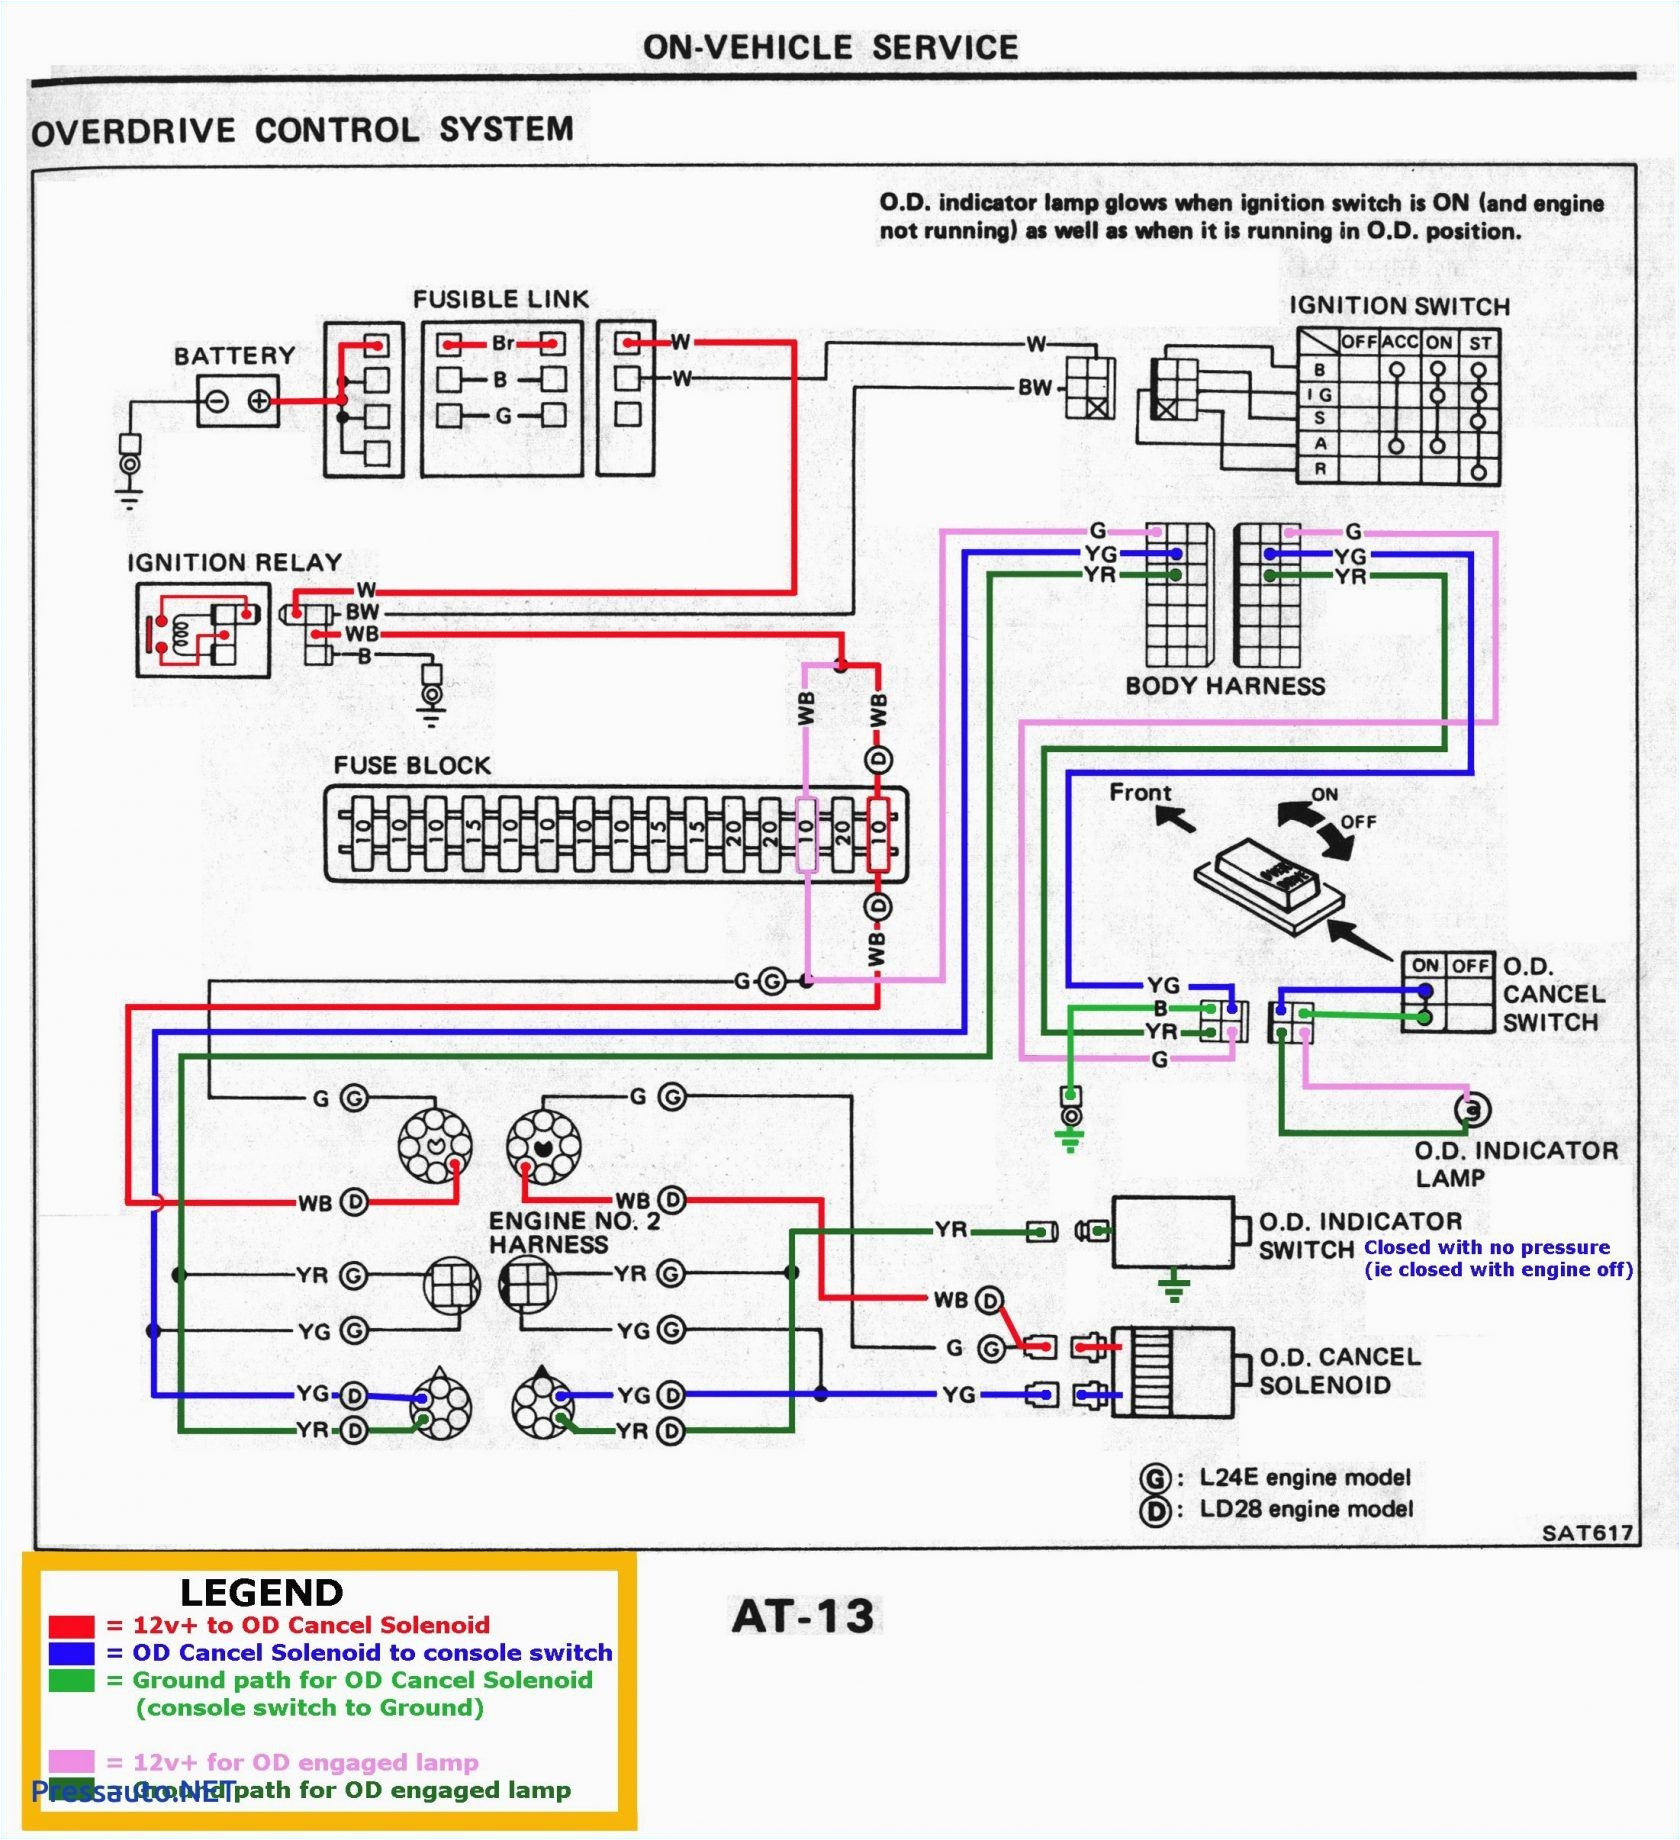 konami wire diagram wiring diagram details konami wire diagram